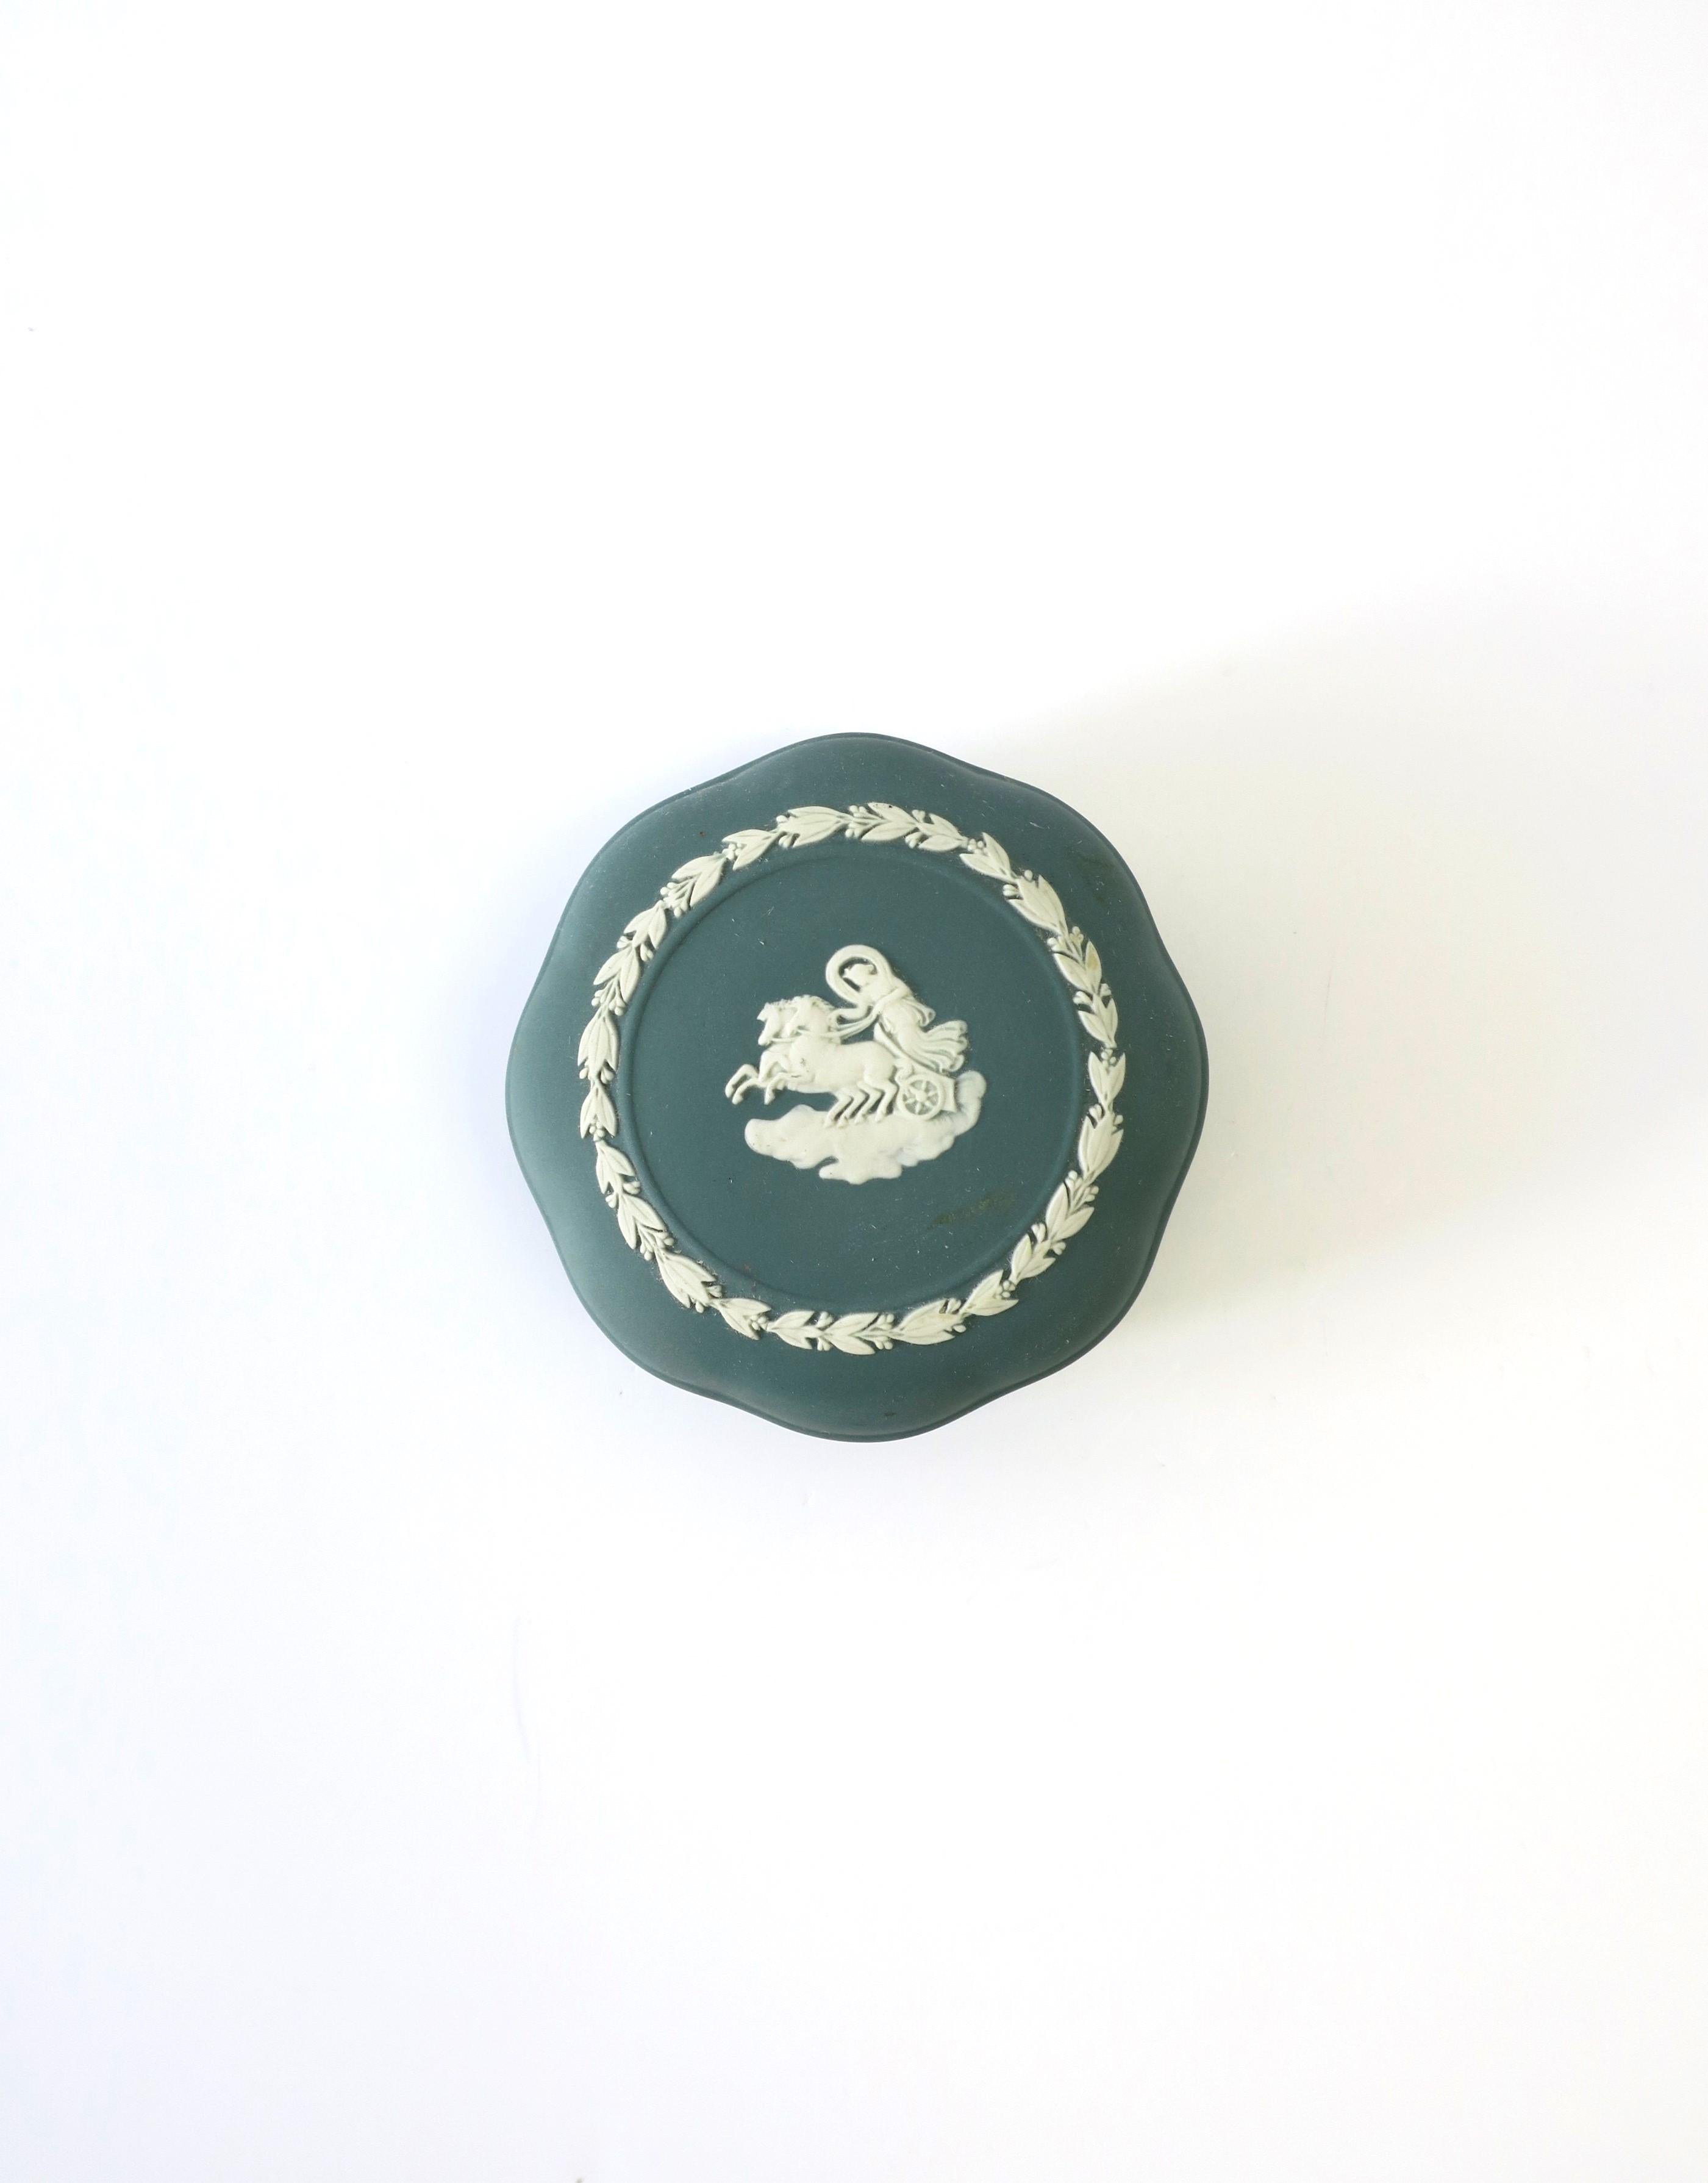 Englische Wedgwood-Jaspisdose mit neoklassizistischem Design in Grün und Weiß, England, ca. Ende des 20. Jahrhunderts. Die Schachtel hat ein weiches Sechseckdesign (eine schöne Alternative zu rund) und ein erhabenes weißes Relief auf dem Deckel und